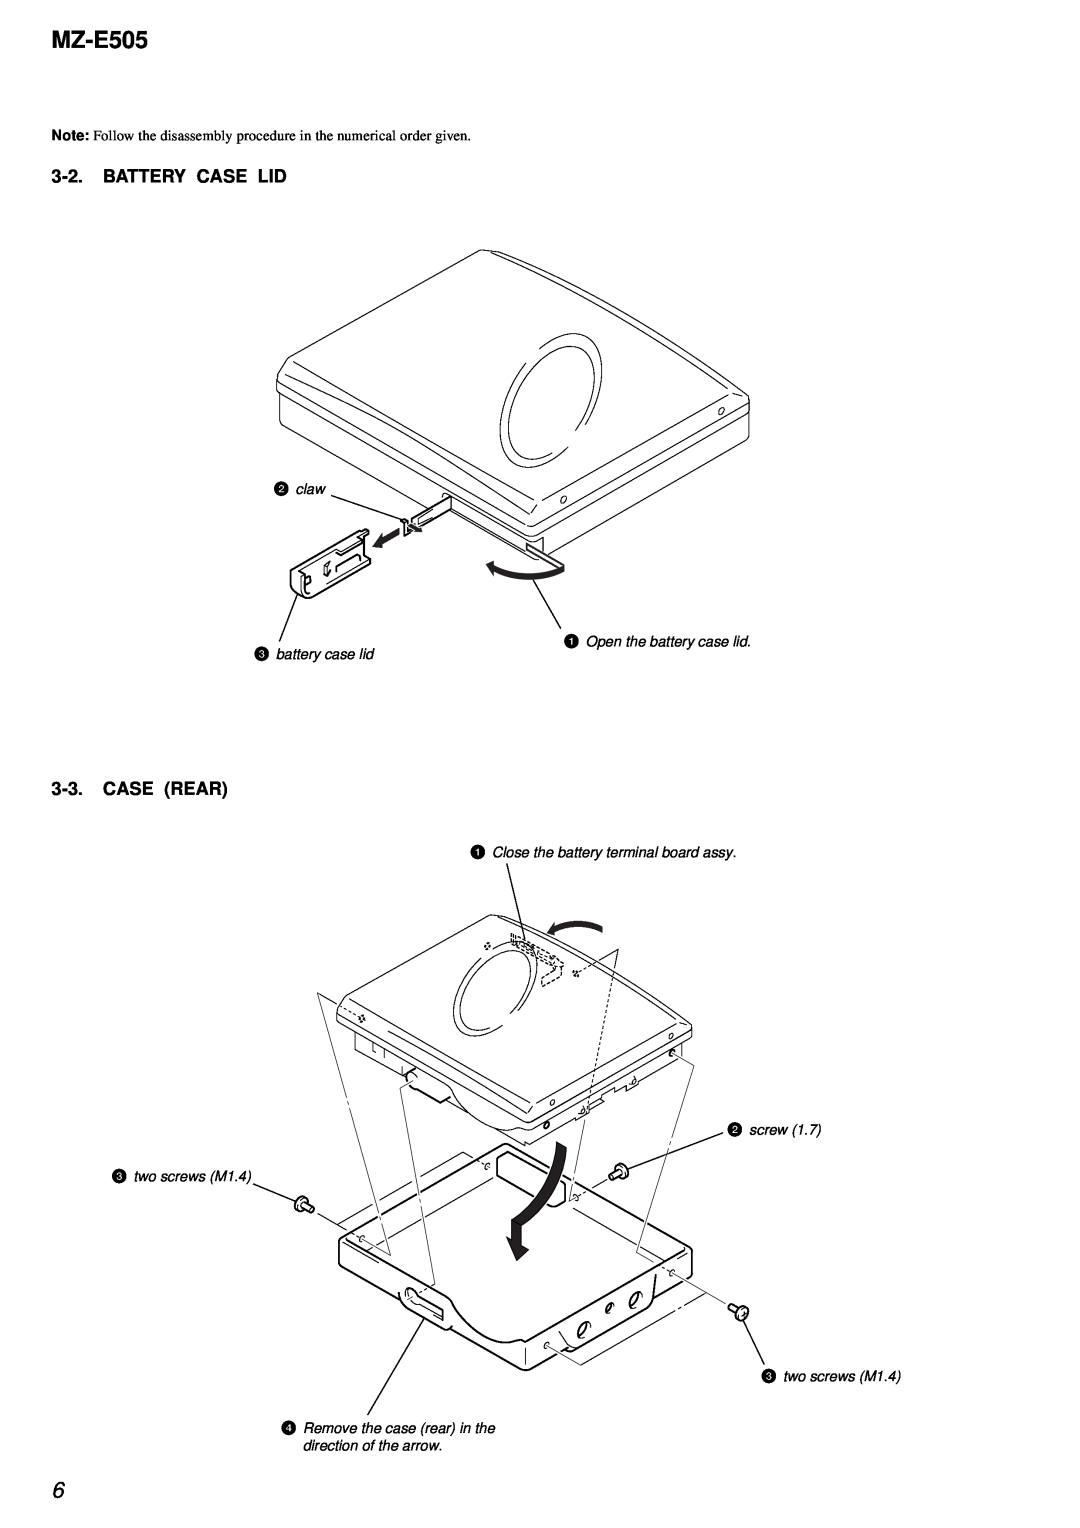 Sony MZ-E505 service manual Battery Case Lid, Case Rear, 2claw 1 Open the battery case lid, 3battery case lid 